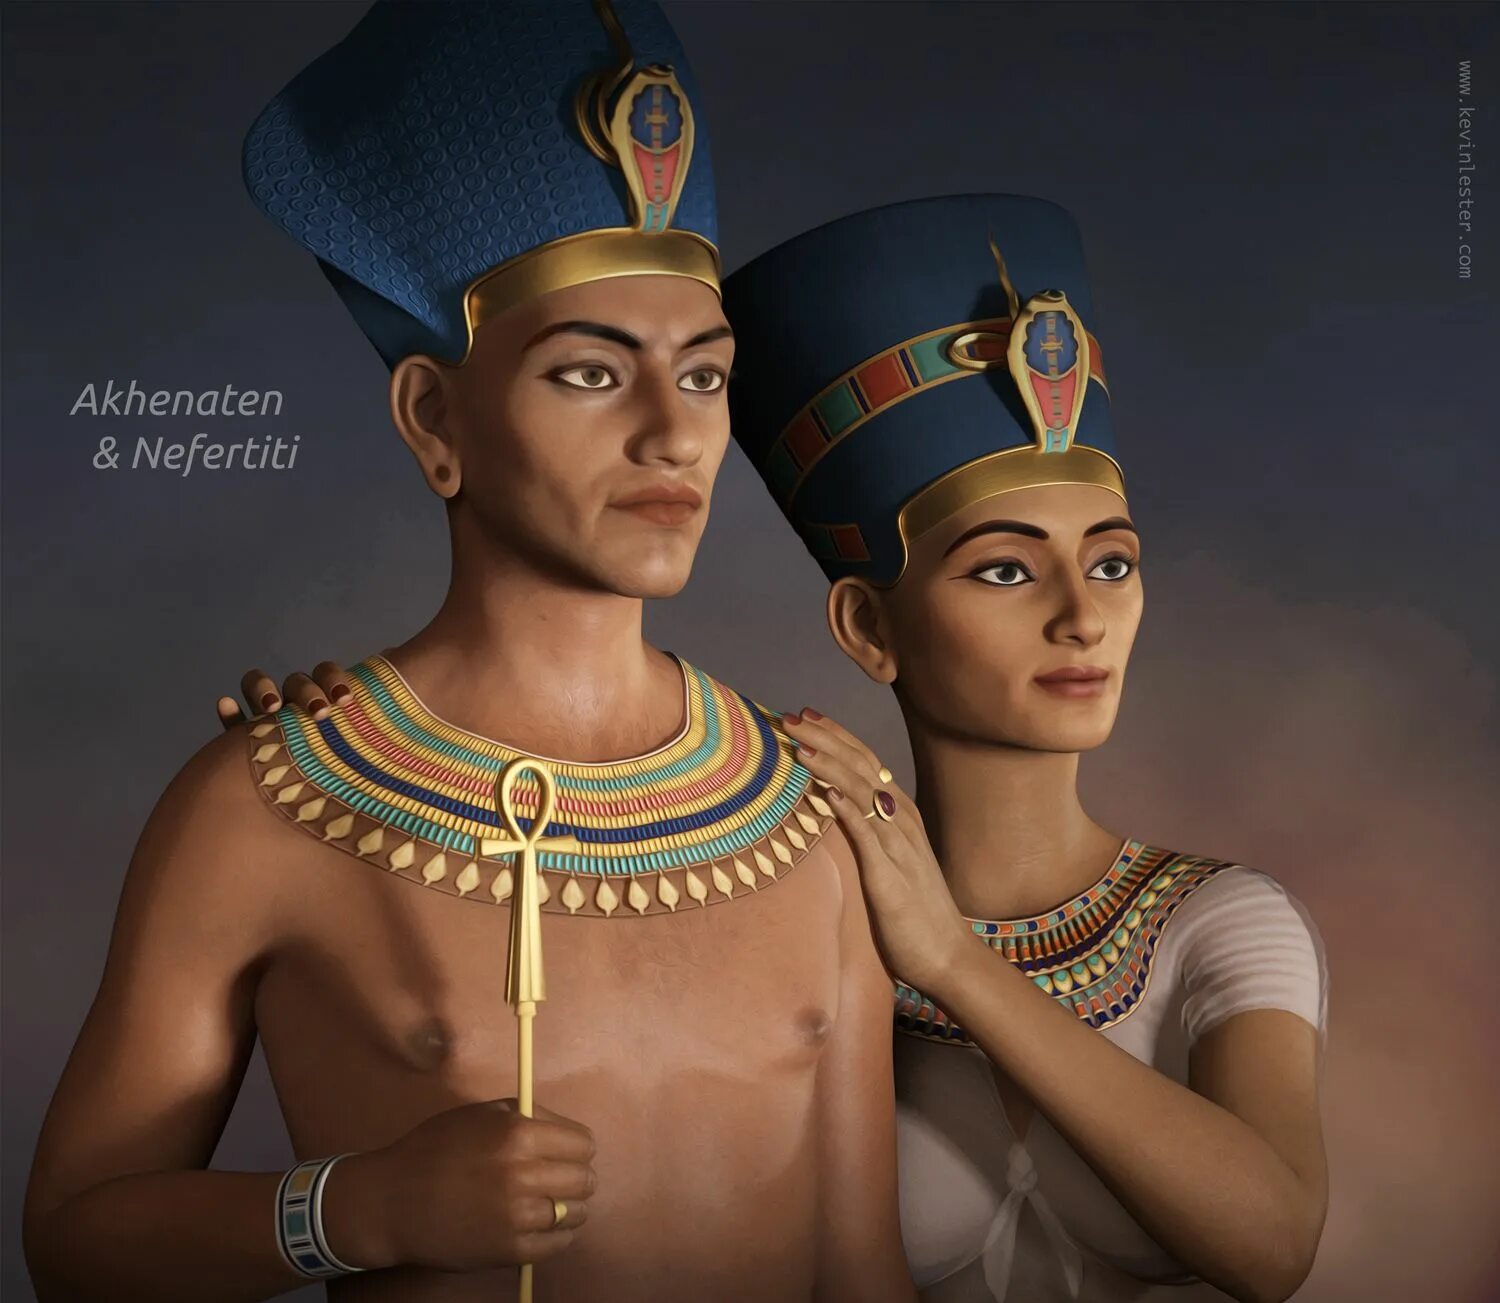 Нефертити царица Египта. Эхнатон фараон Египта. Эхнатон и Нефертити. Египет Эхнатон и Нефертити.